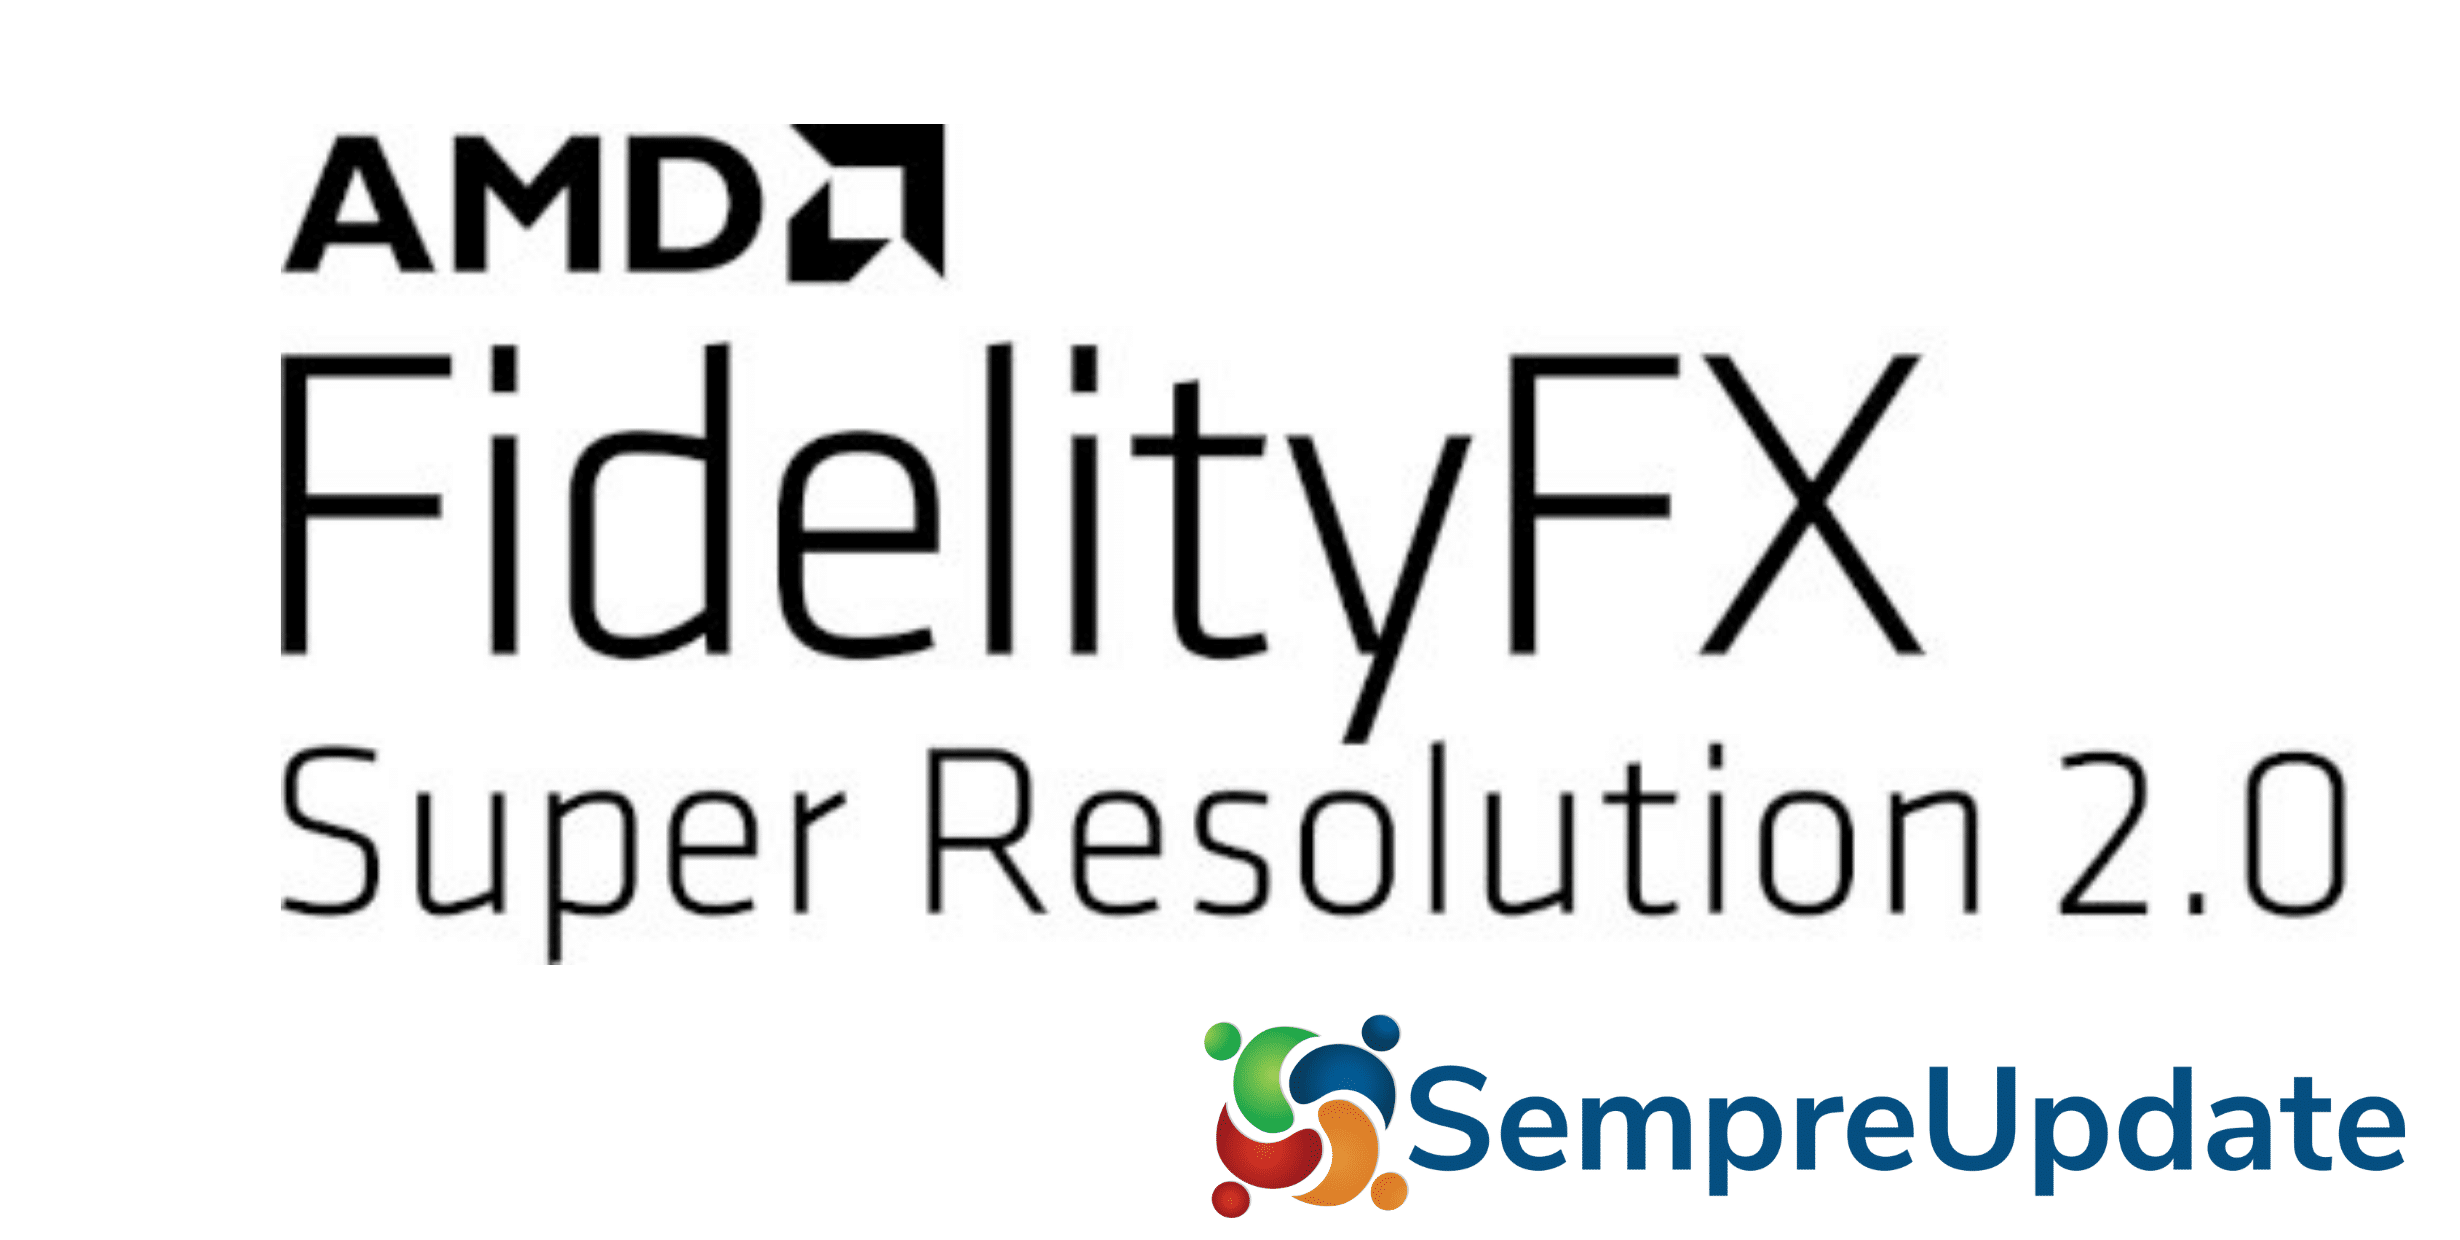 AMD FidelityFX Super Resolution 2.0 promete melhorar experiência com jogos